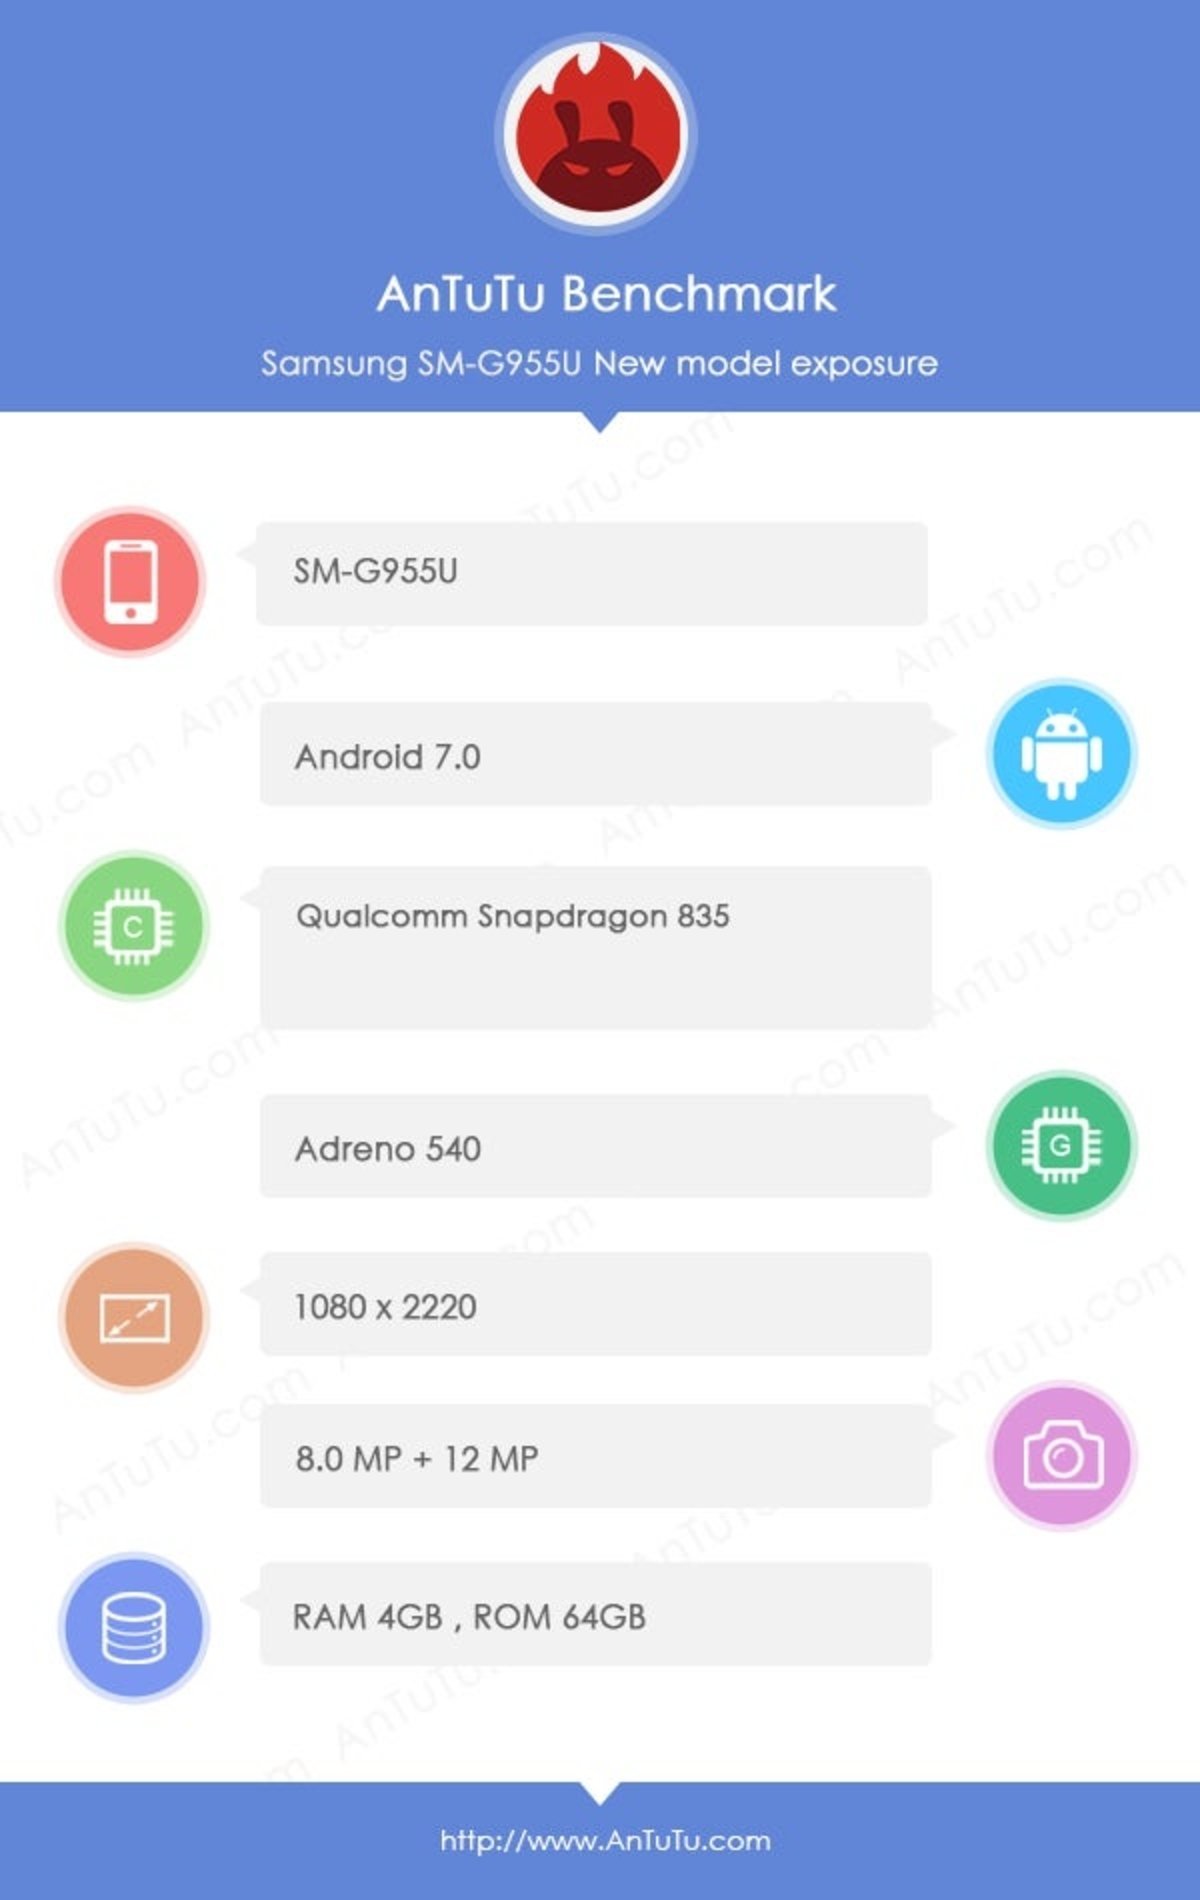 AnTuTu confirma una vez más las características del Samsung Galaxy S8 y S8+